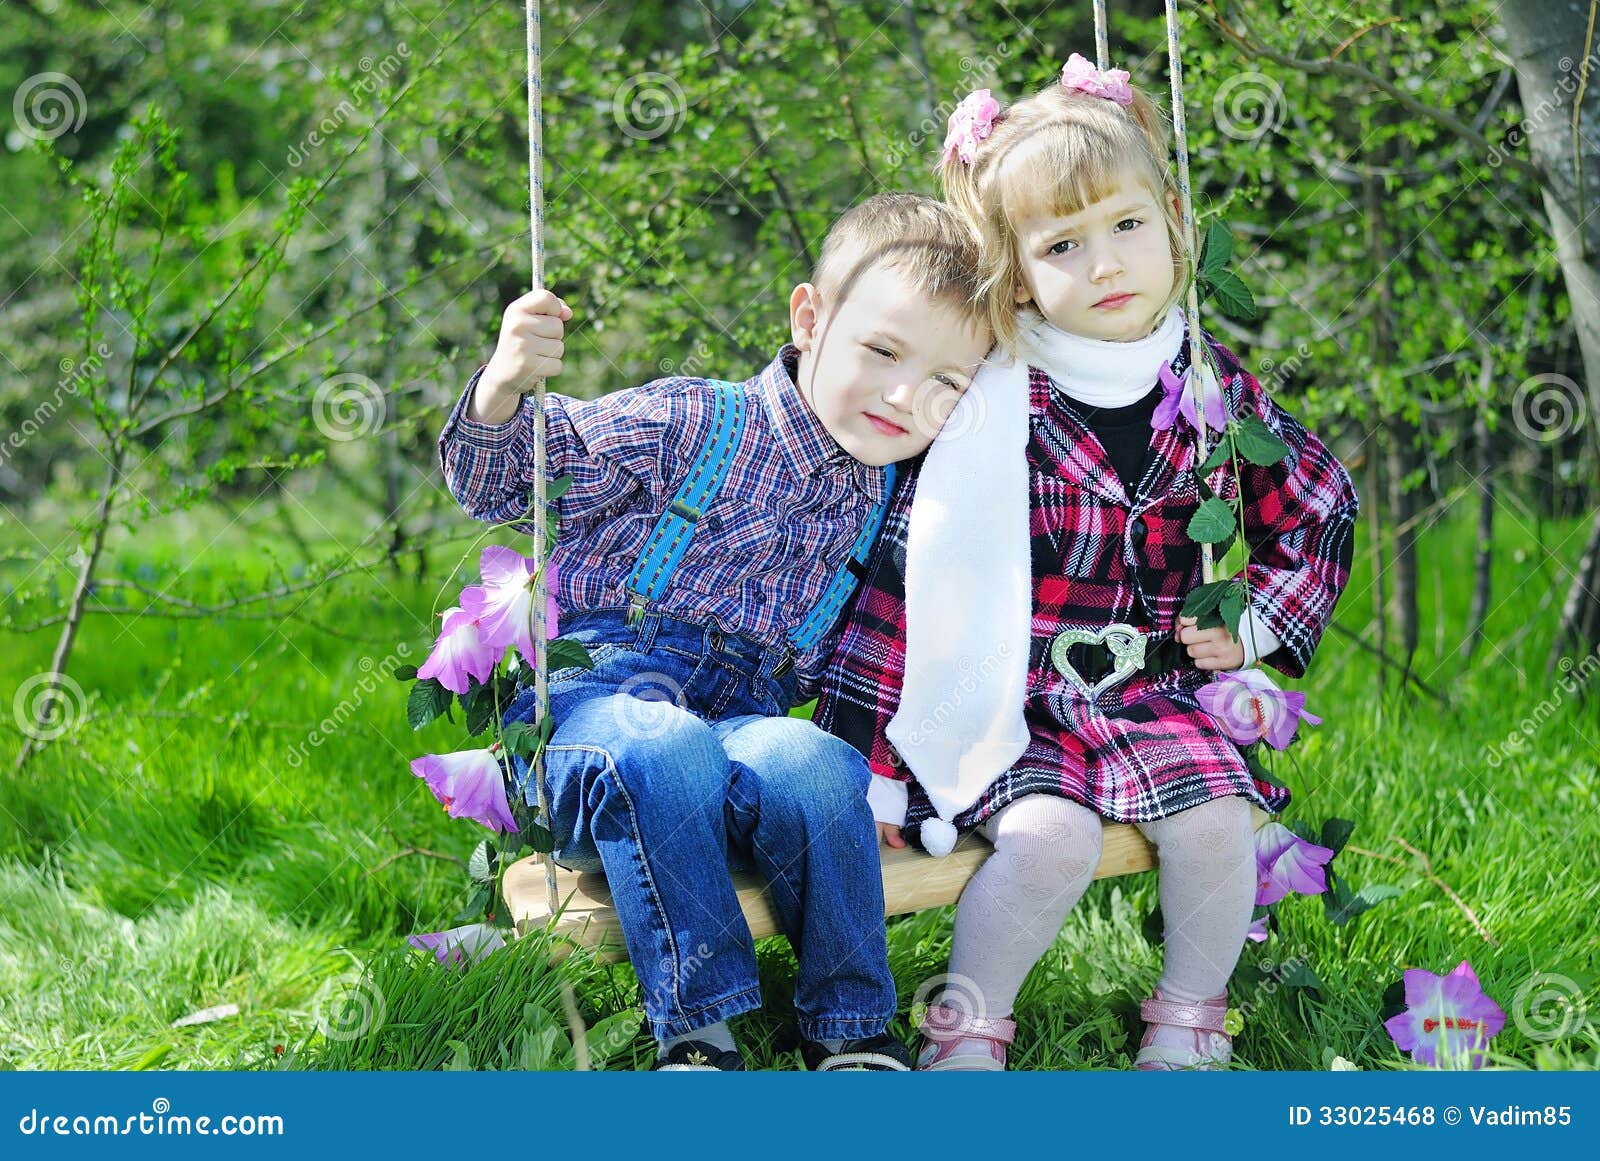 couple-love-little-children-green-meadow-kids-swings-33025468.jpg